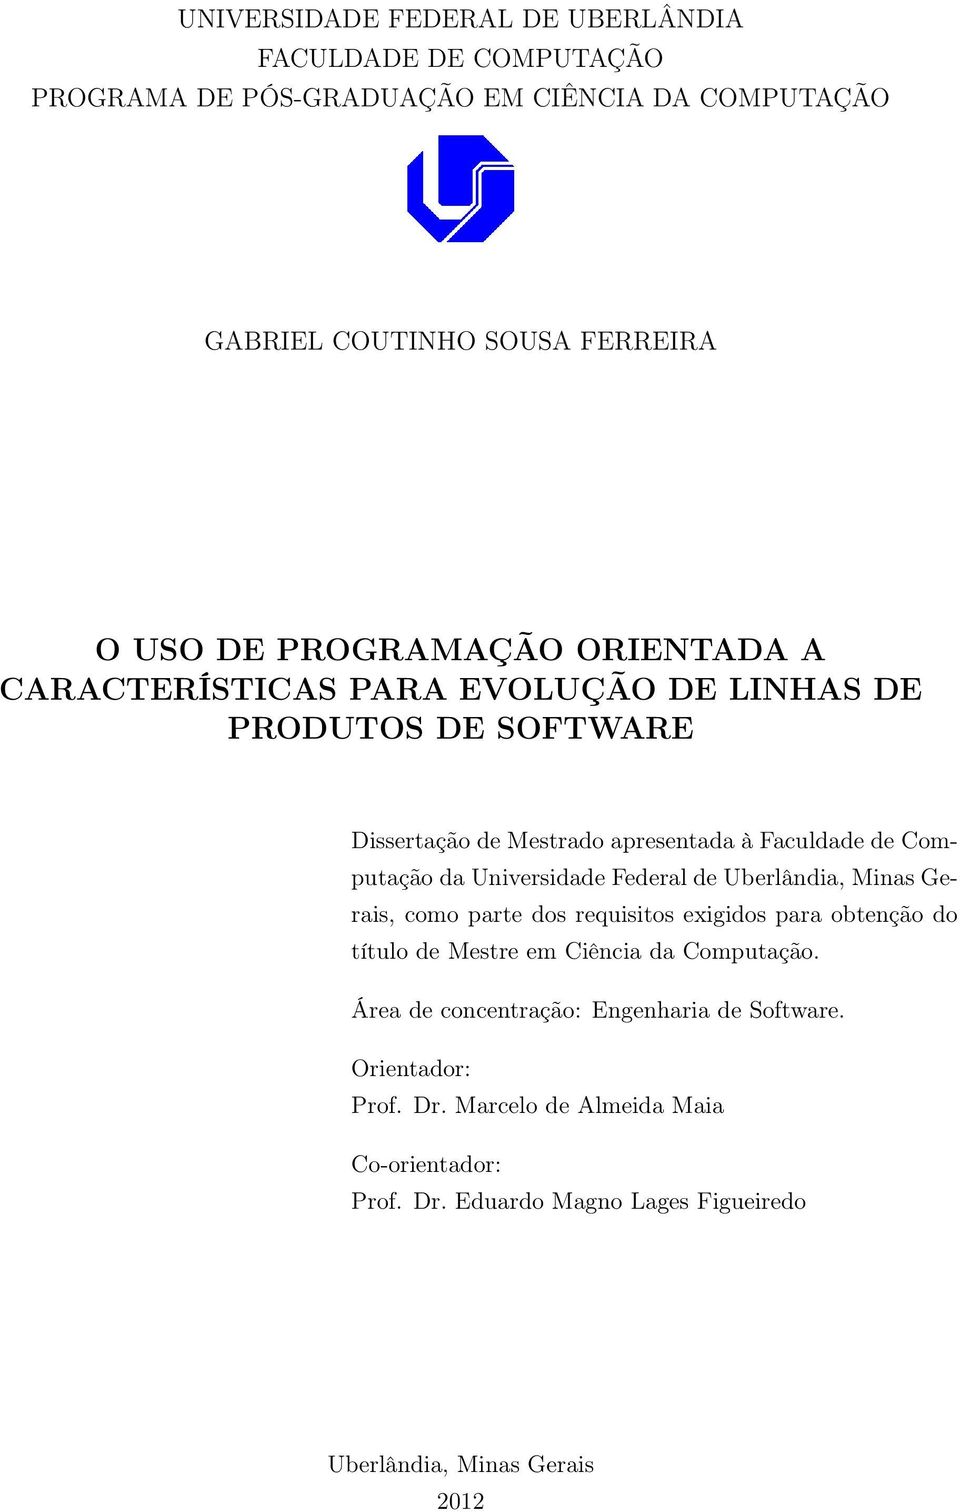 Universidade Federal de Uberlândia, Minas Gerais, como parte dos requisitos exigidos para obtenção do título de Mestre em Ciência da Computação.